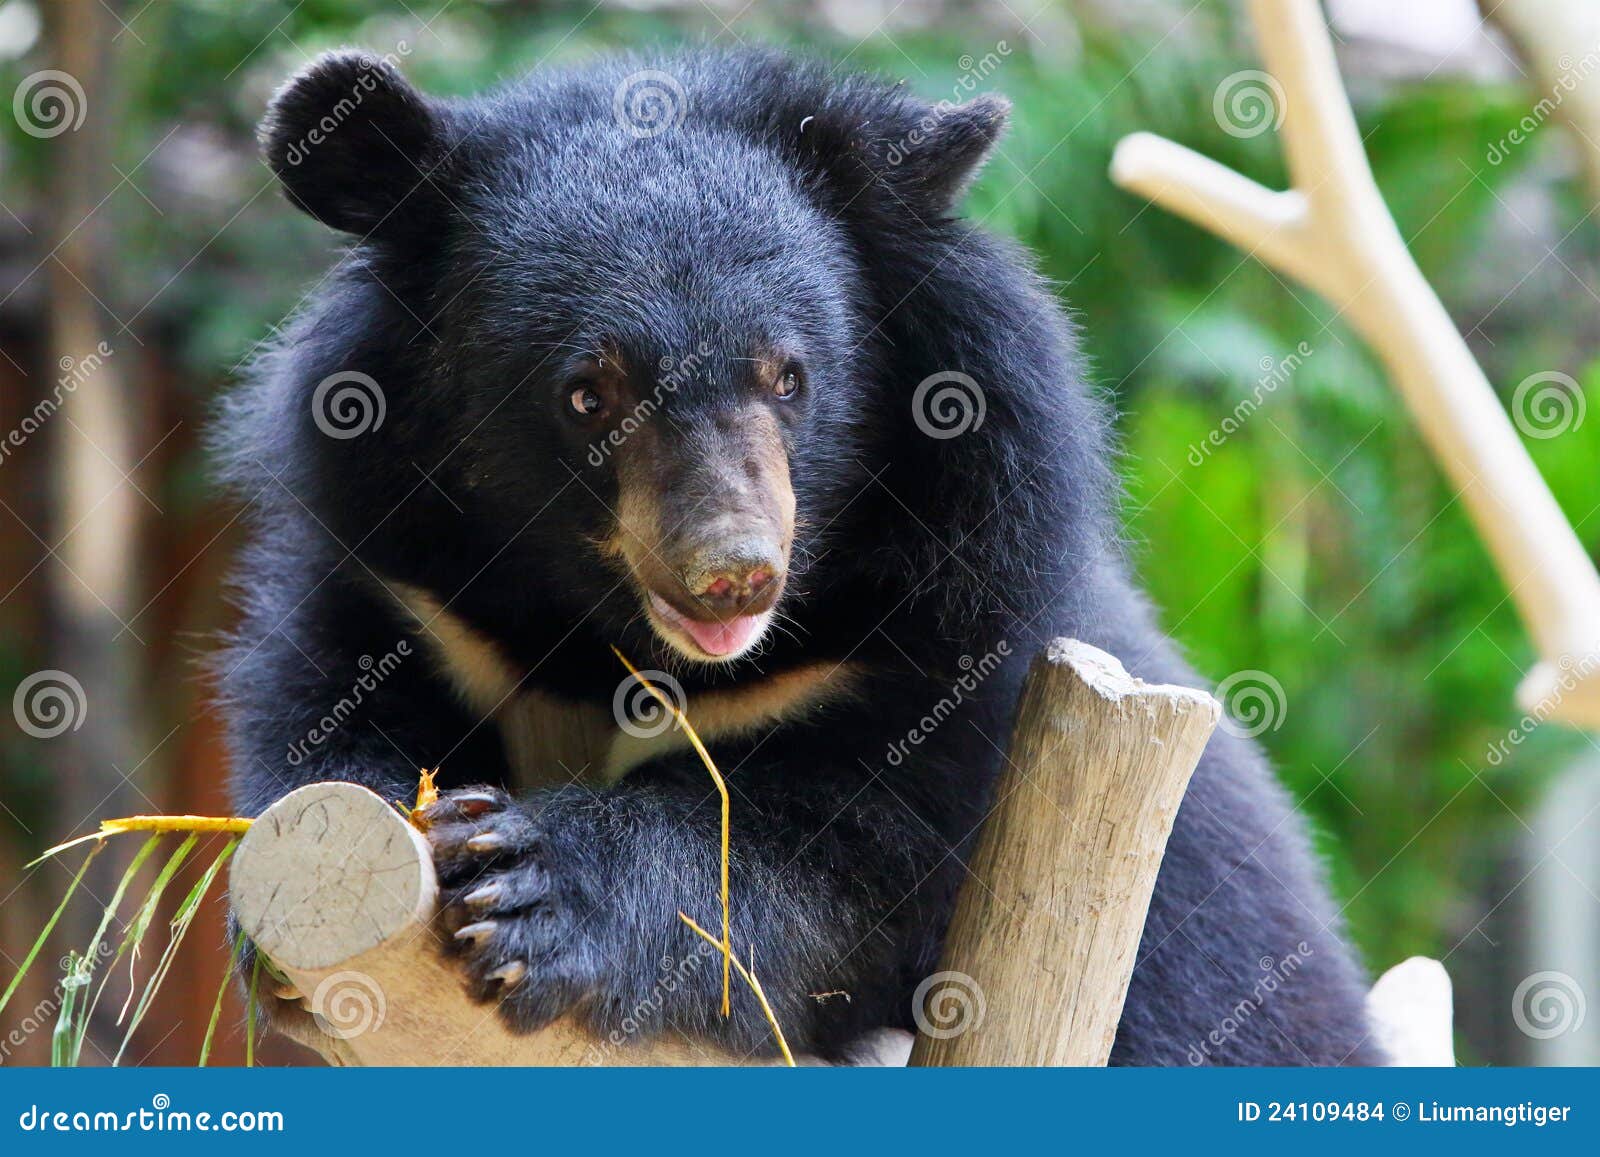 a baby black bear climbs on a trunk